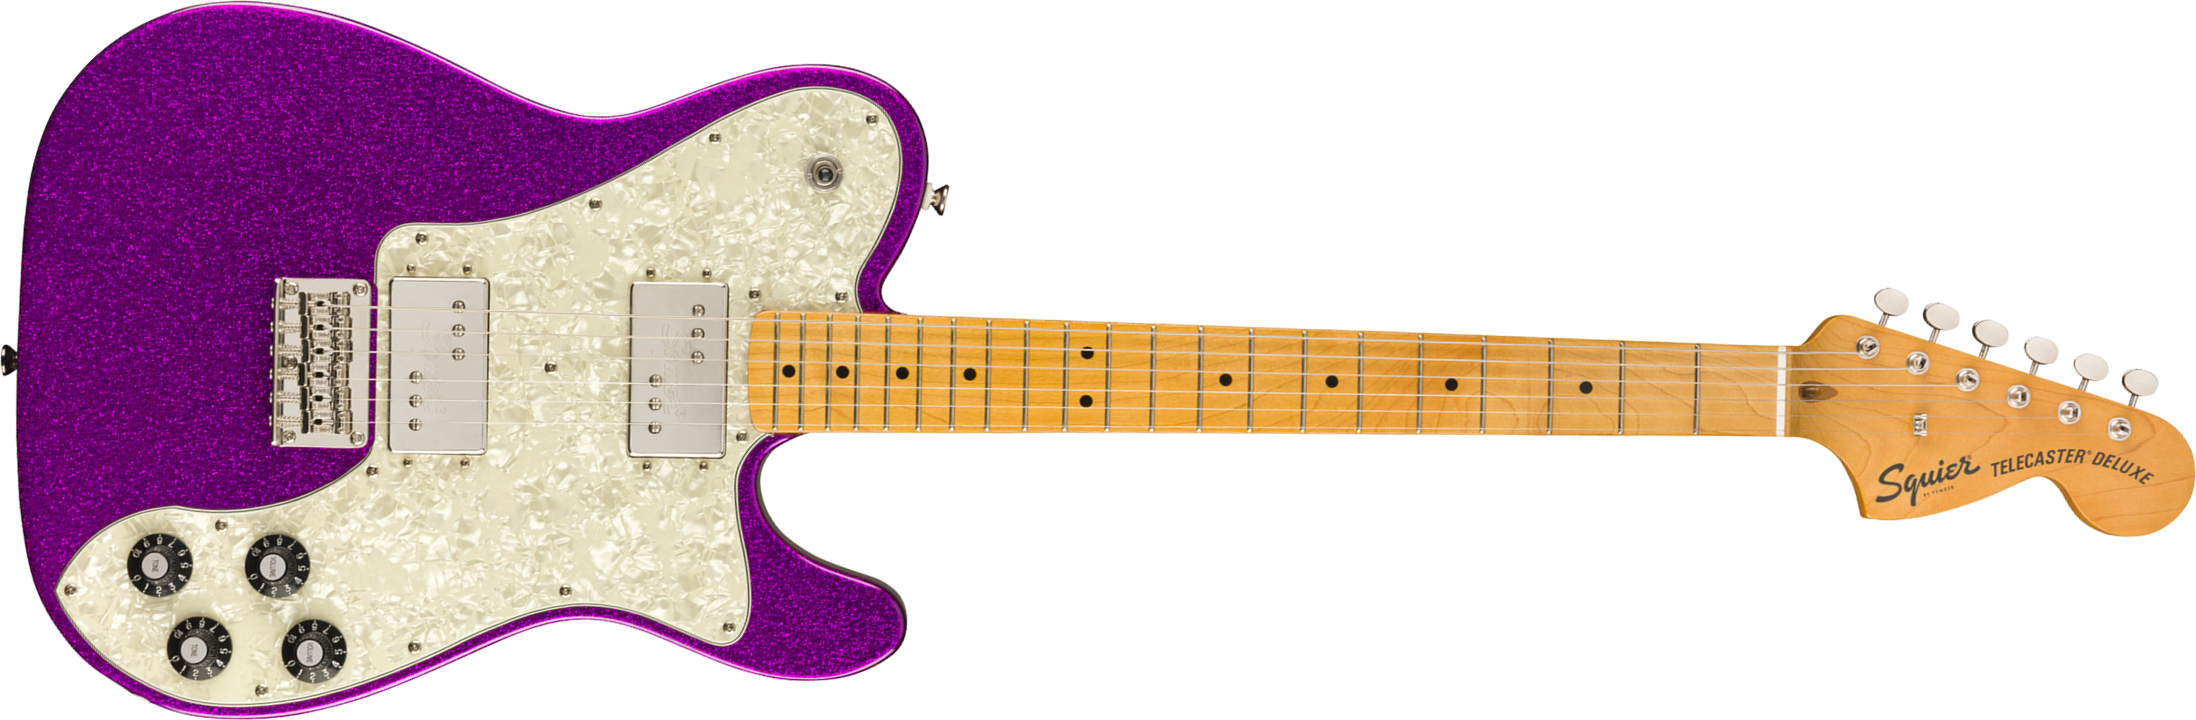 Squier Tele Deluxe Classic Vibe 70 Fsr Ltd 2020 Hh Htmn - Purple Sparkle - E-Gitarre in Teleform - Main picture